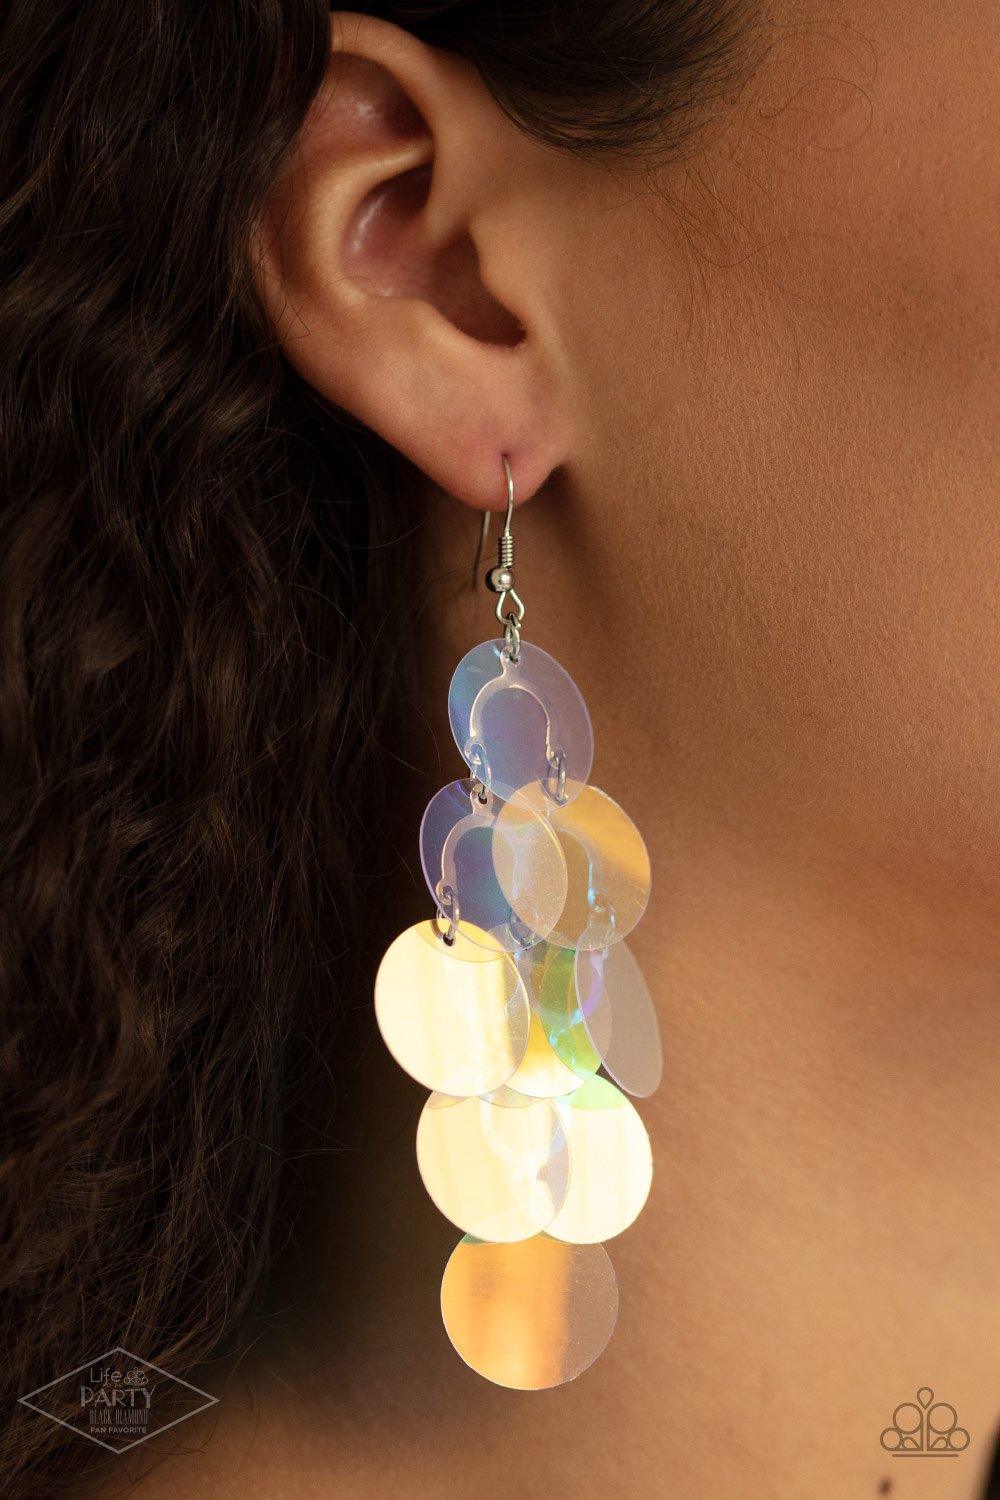 Mermaid Shimmer Multi Earrings - Jewelry by Bretta